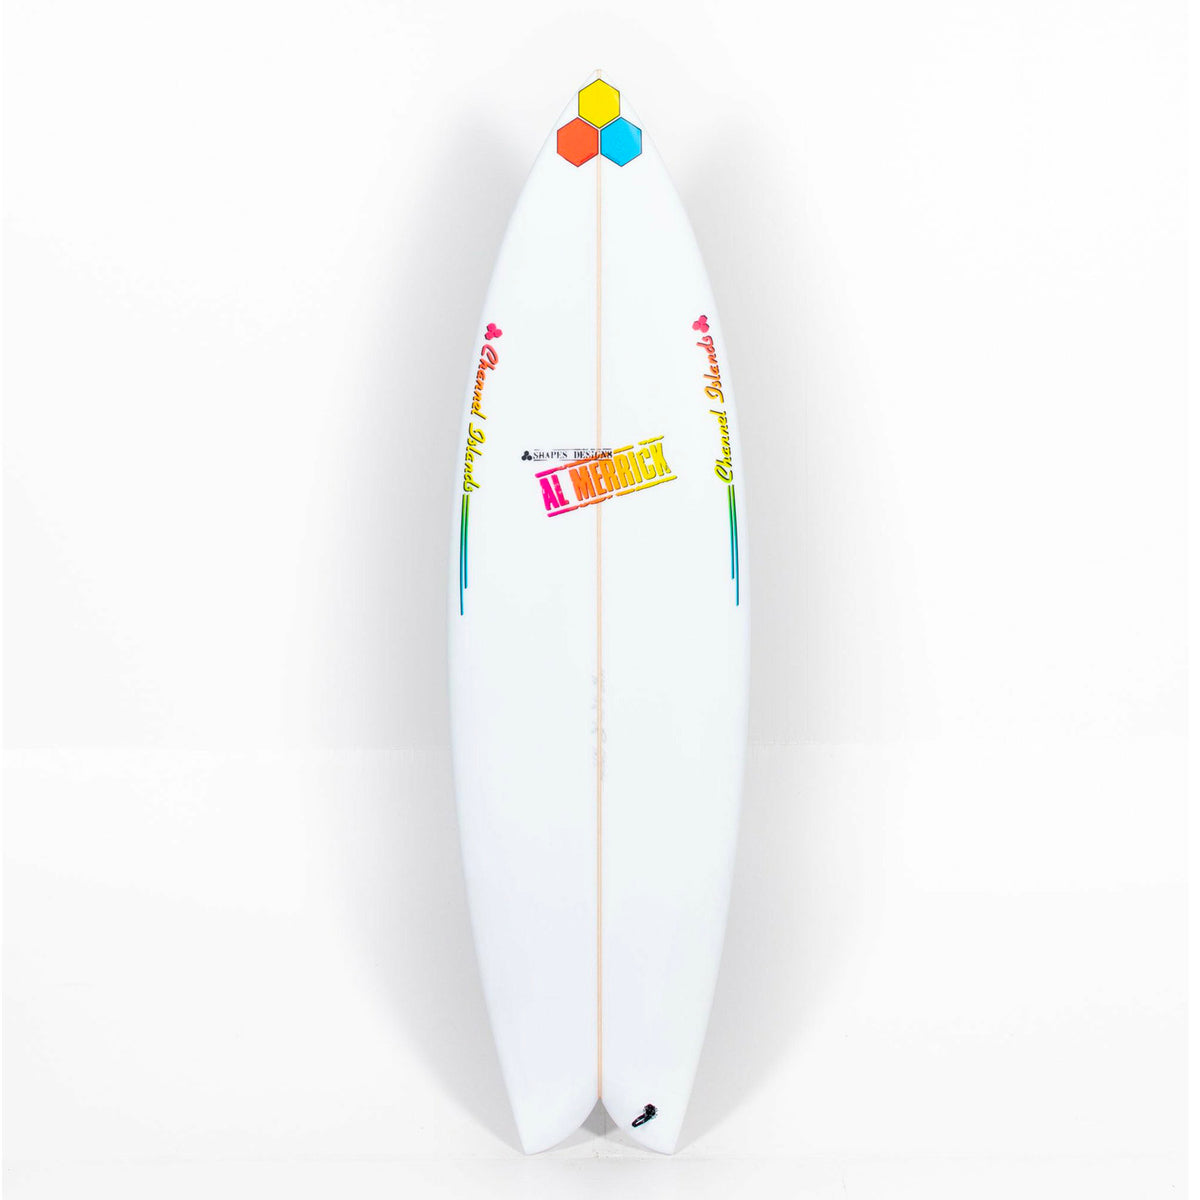 Channel Islands / Al Merrick 'FishBeard' Twin Fin Surfboard - 5'8